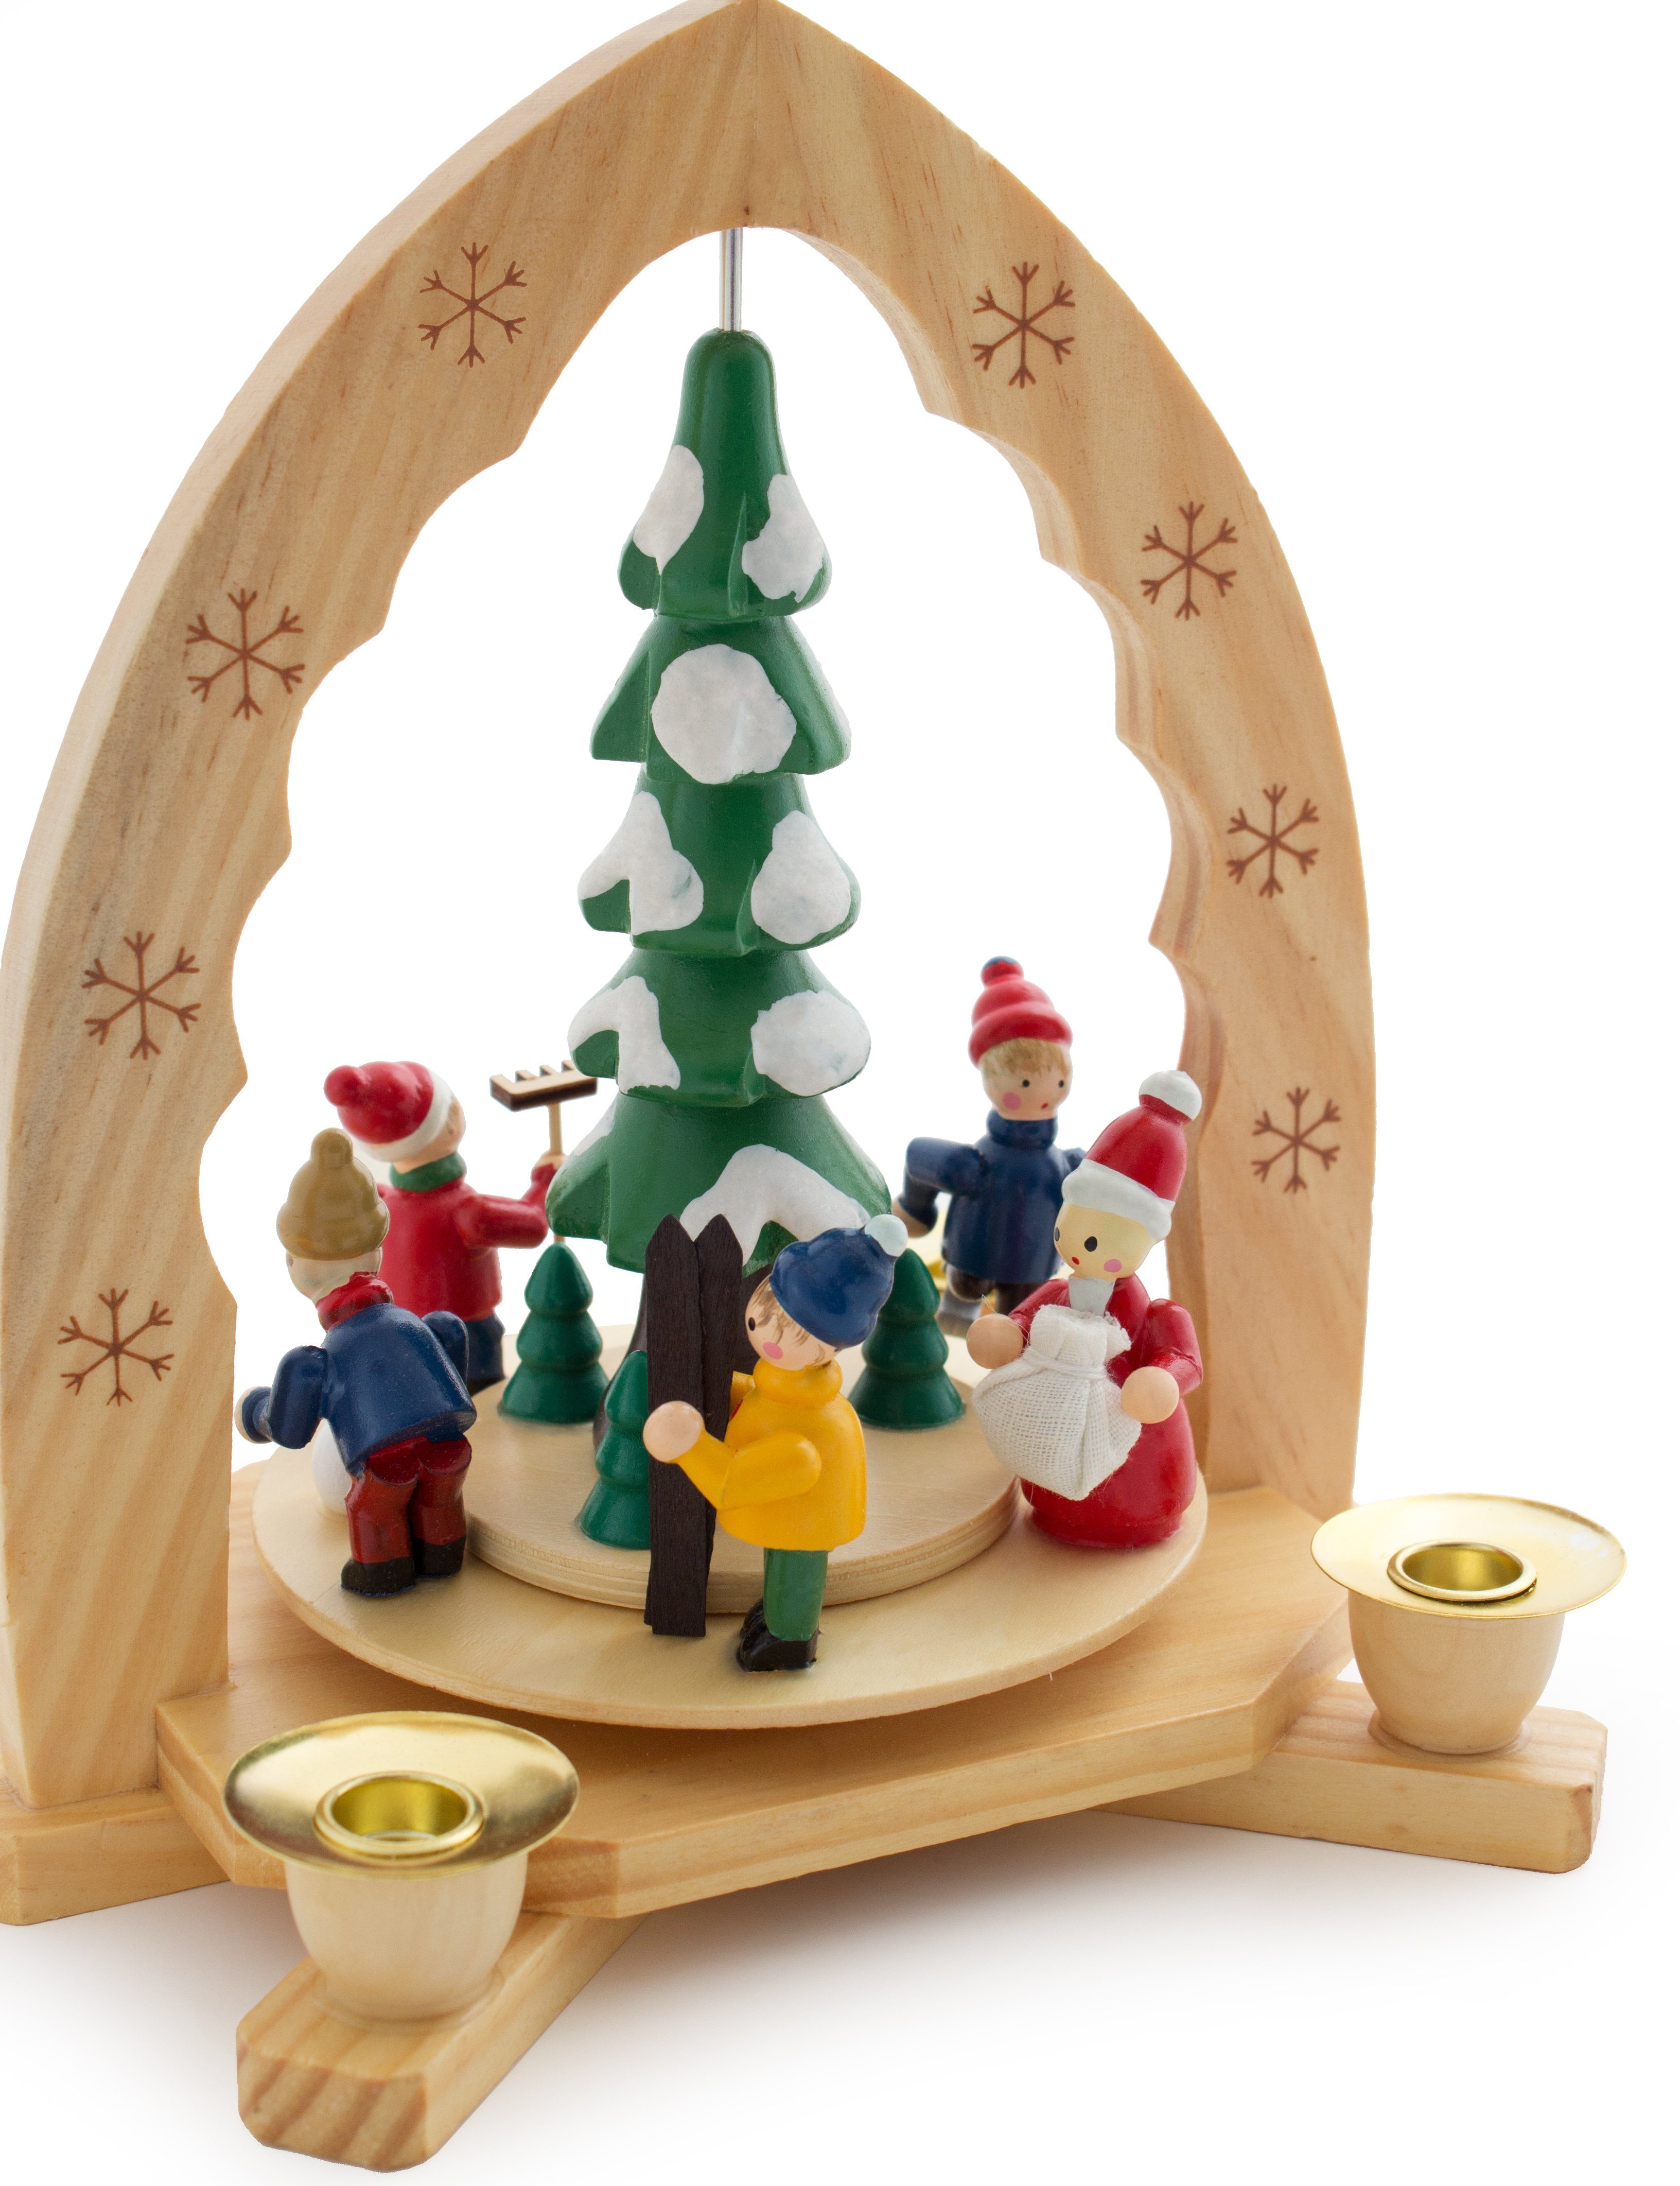 BRUBAKER Weihnachtspyramide 1-stöckige Holzpyramide mit Figuren, Holz, Tischpyramide Weihnachtsdeko aus Winterszene, cm 30 hoch, handbemalte